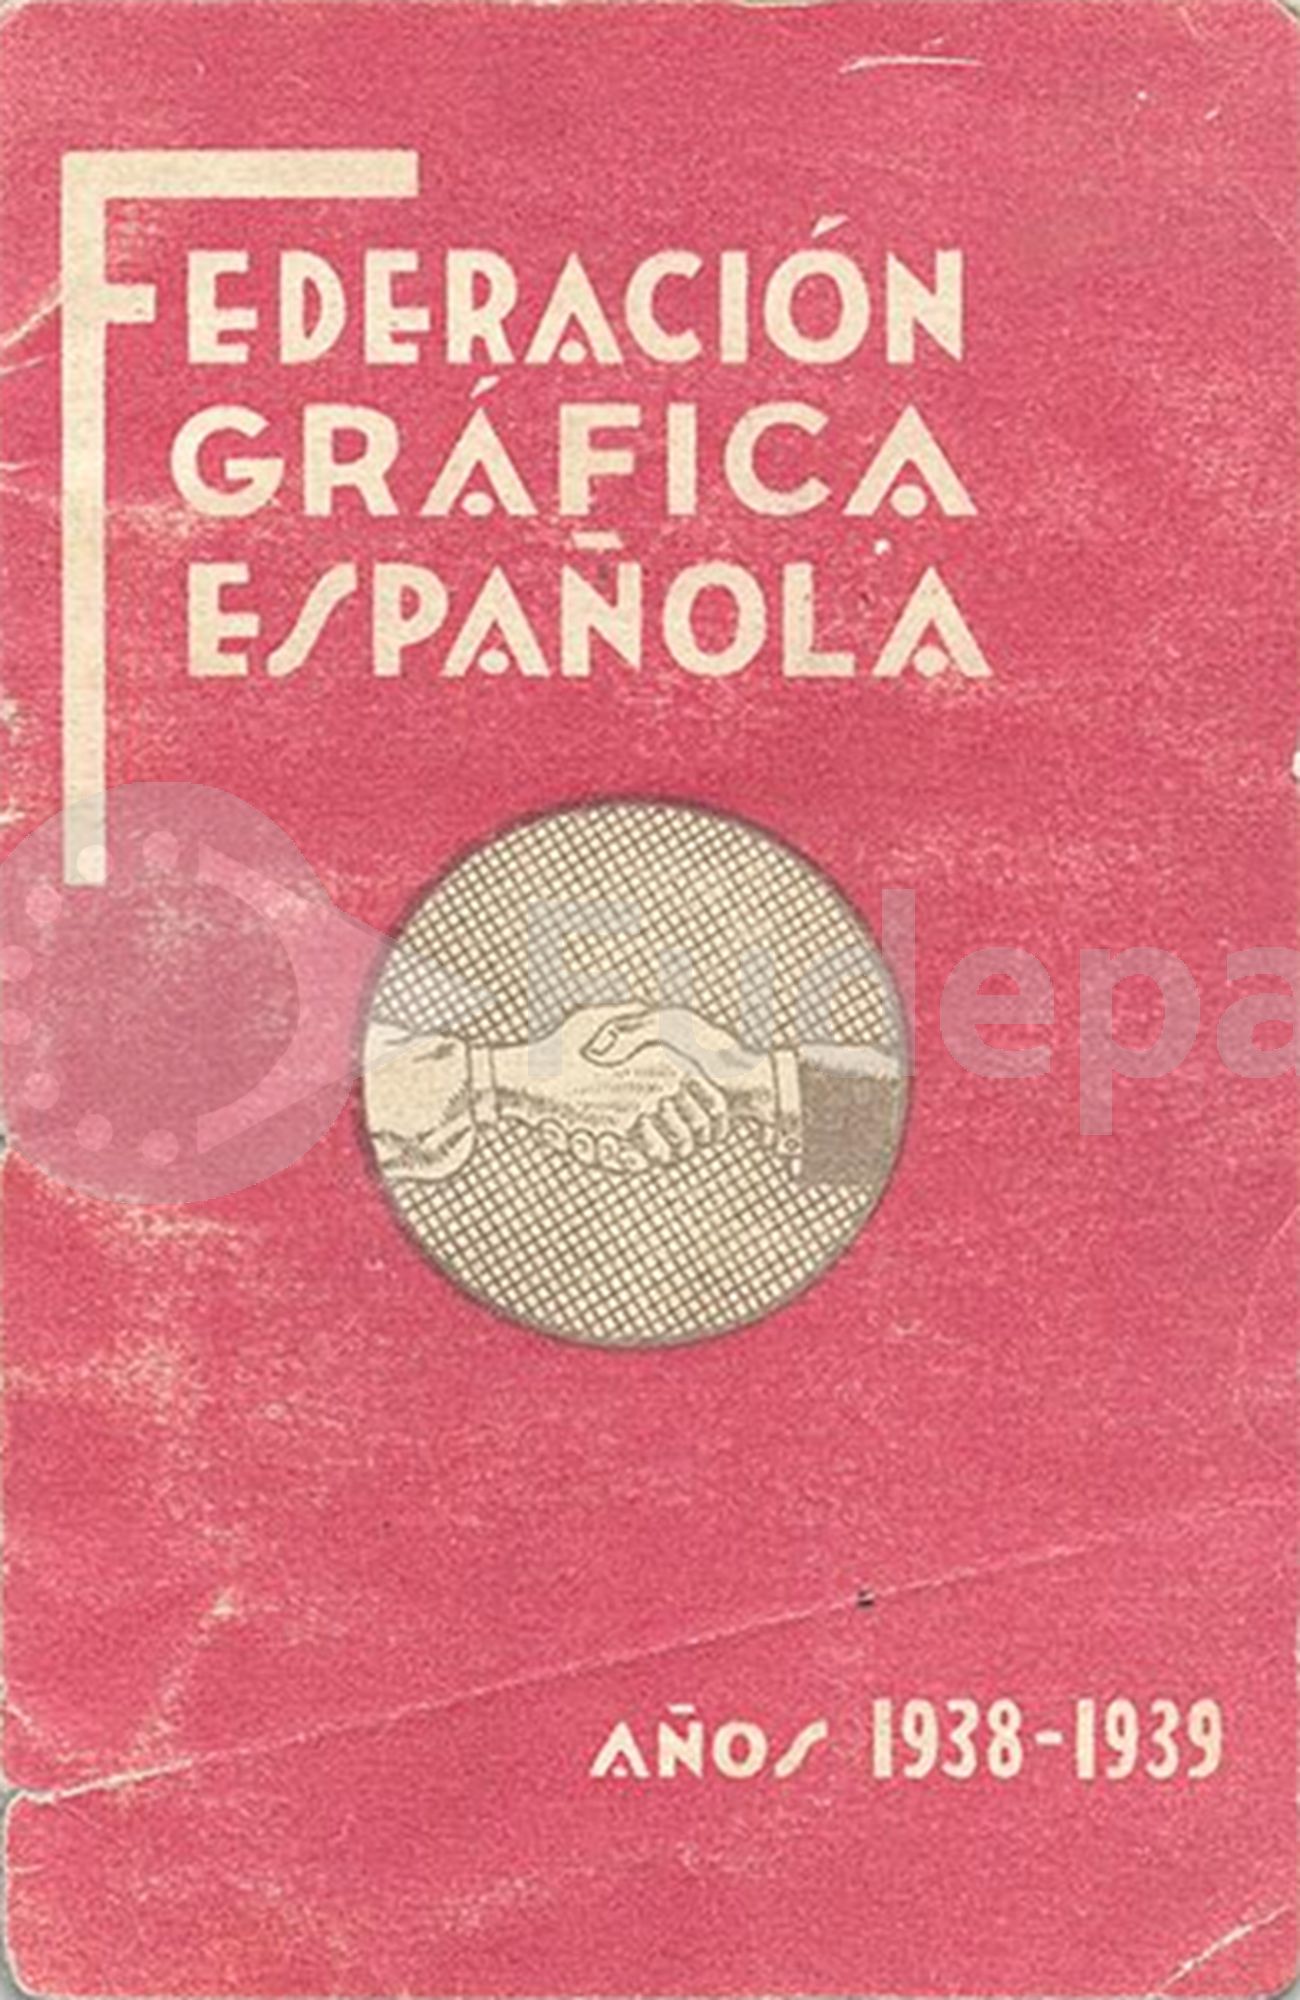 Federación Gráfica Española. Carné de Santiago Hernández Luque, que ingresó el 11/10/1937. Úbeda, 1938-1939. Donado por Salvador Mera de UGT Cádiz. FUDEPA. AHUGT-A: C_12877/35